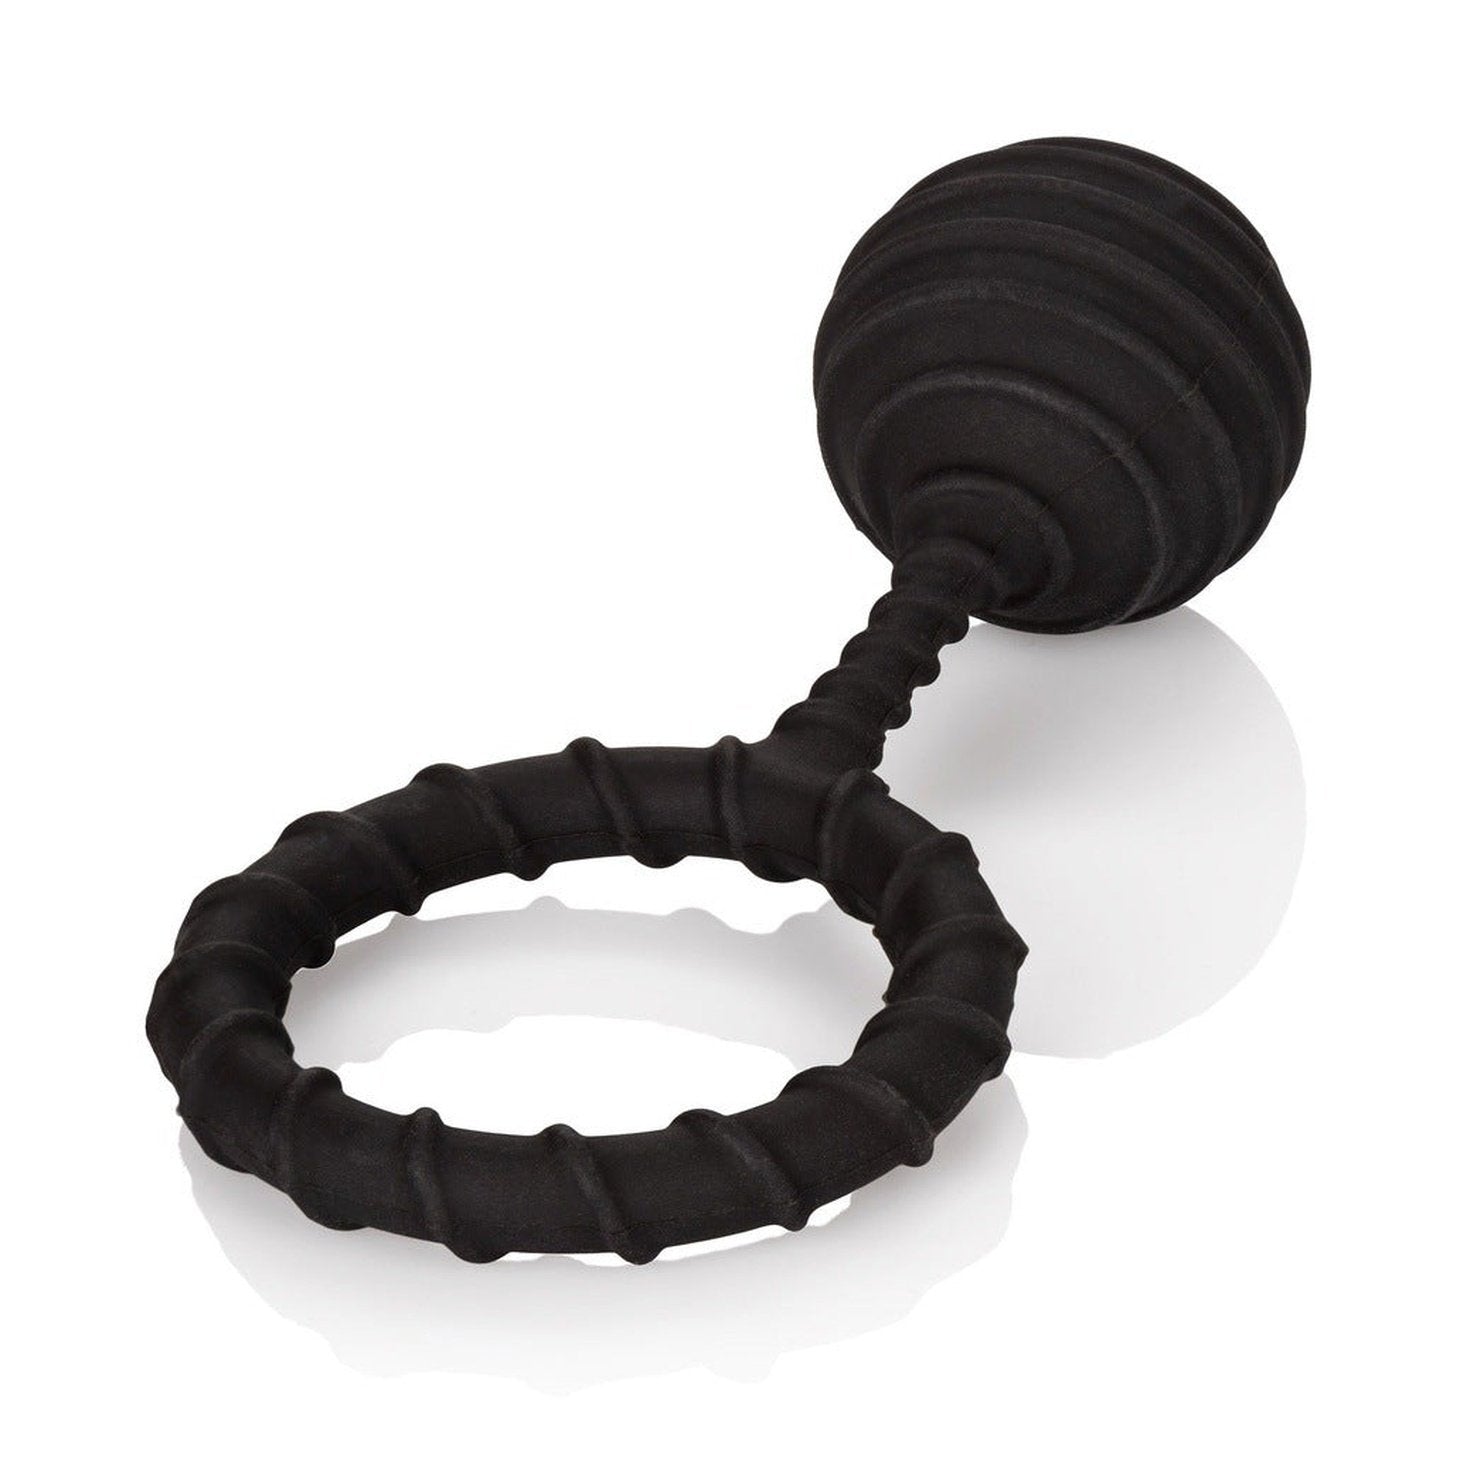 Weighted Ring Extra Large - Anello fallico in 100% puro silicone, elastico e confortevole - Nero, Peso 110 gr.